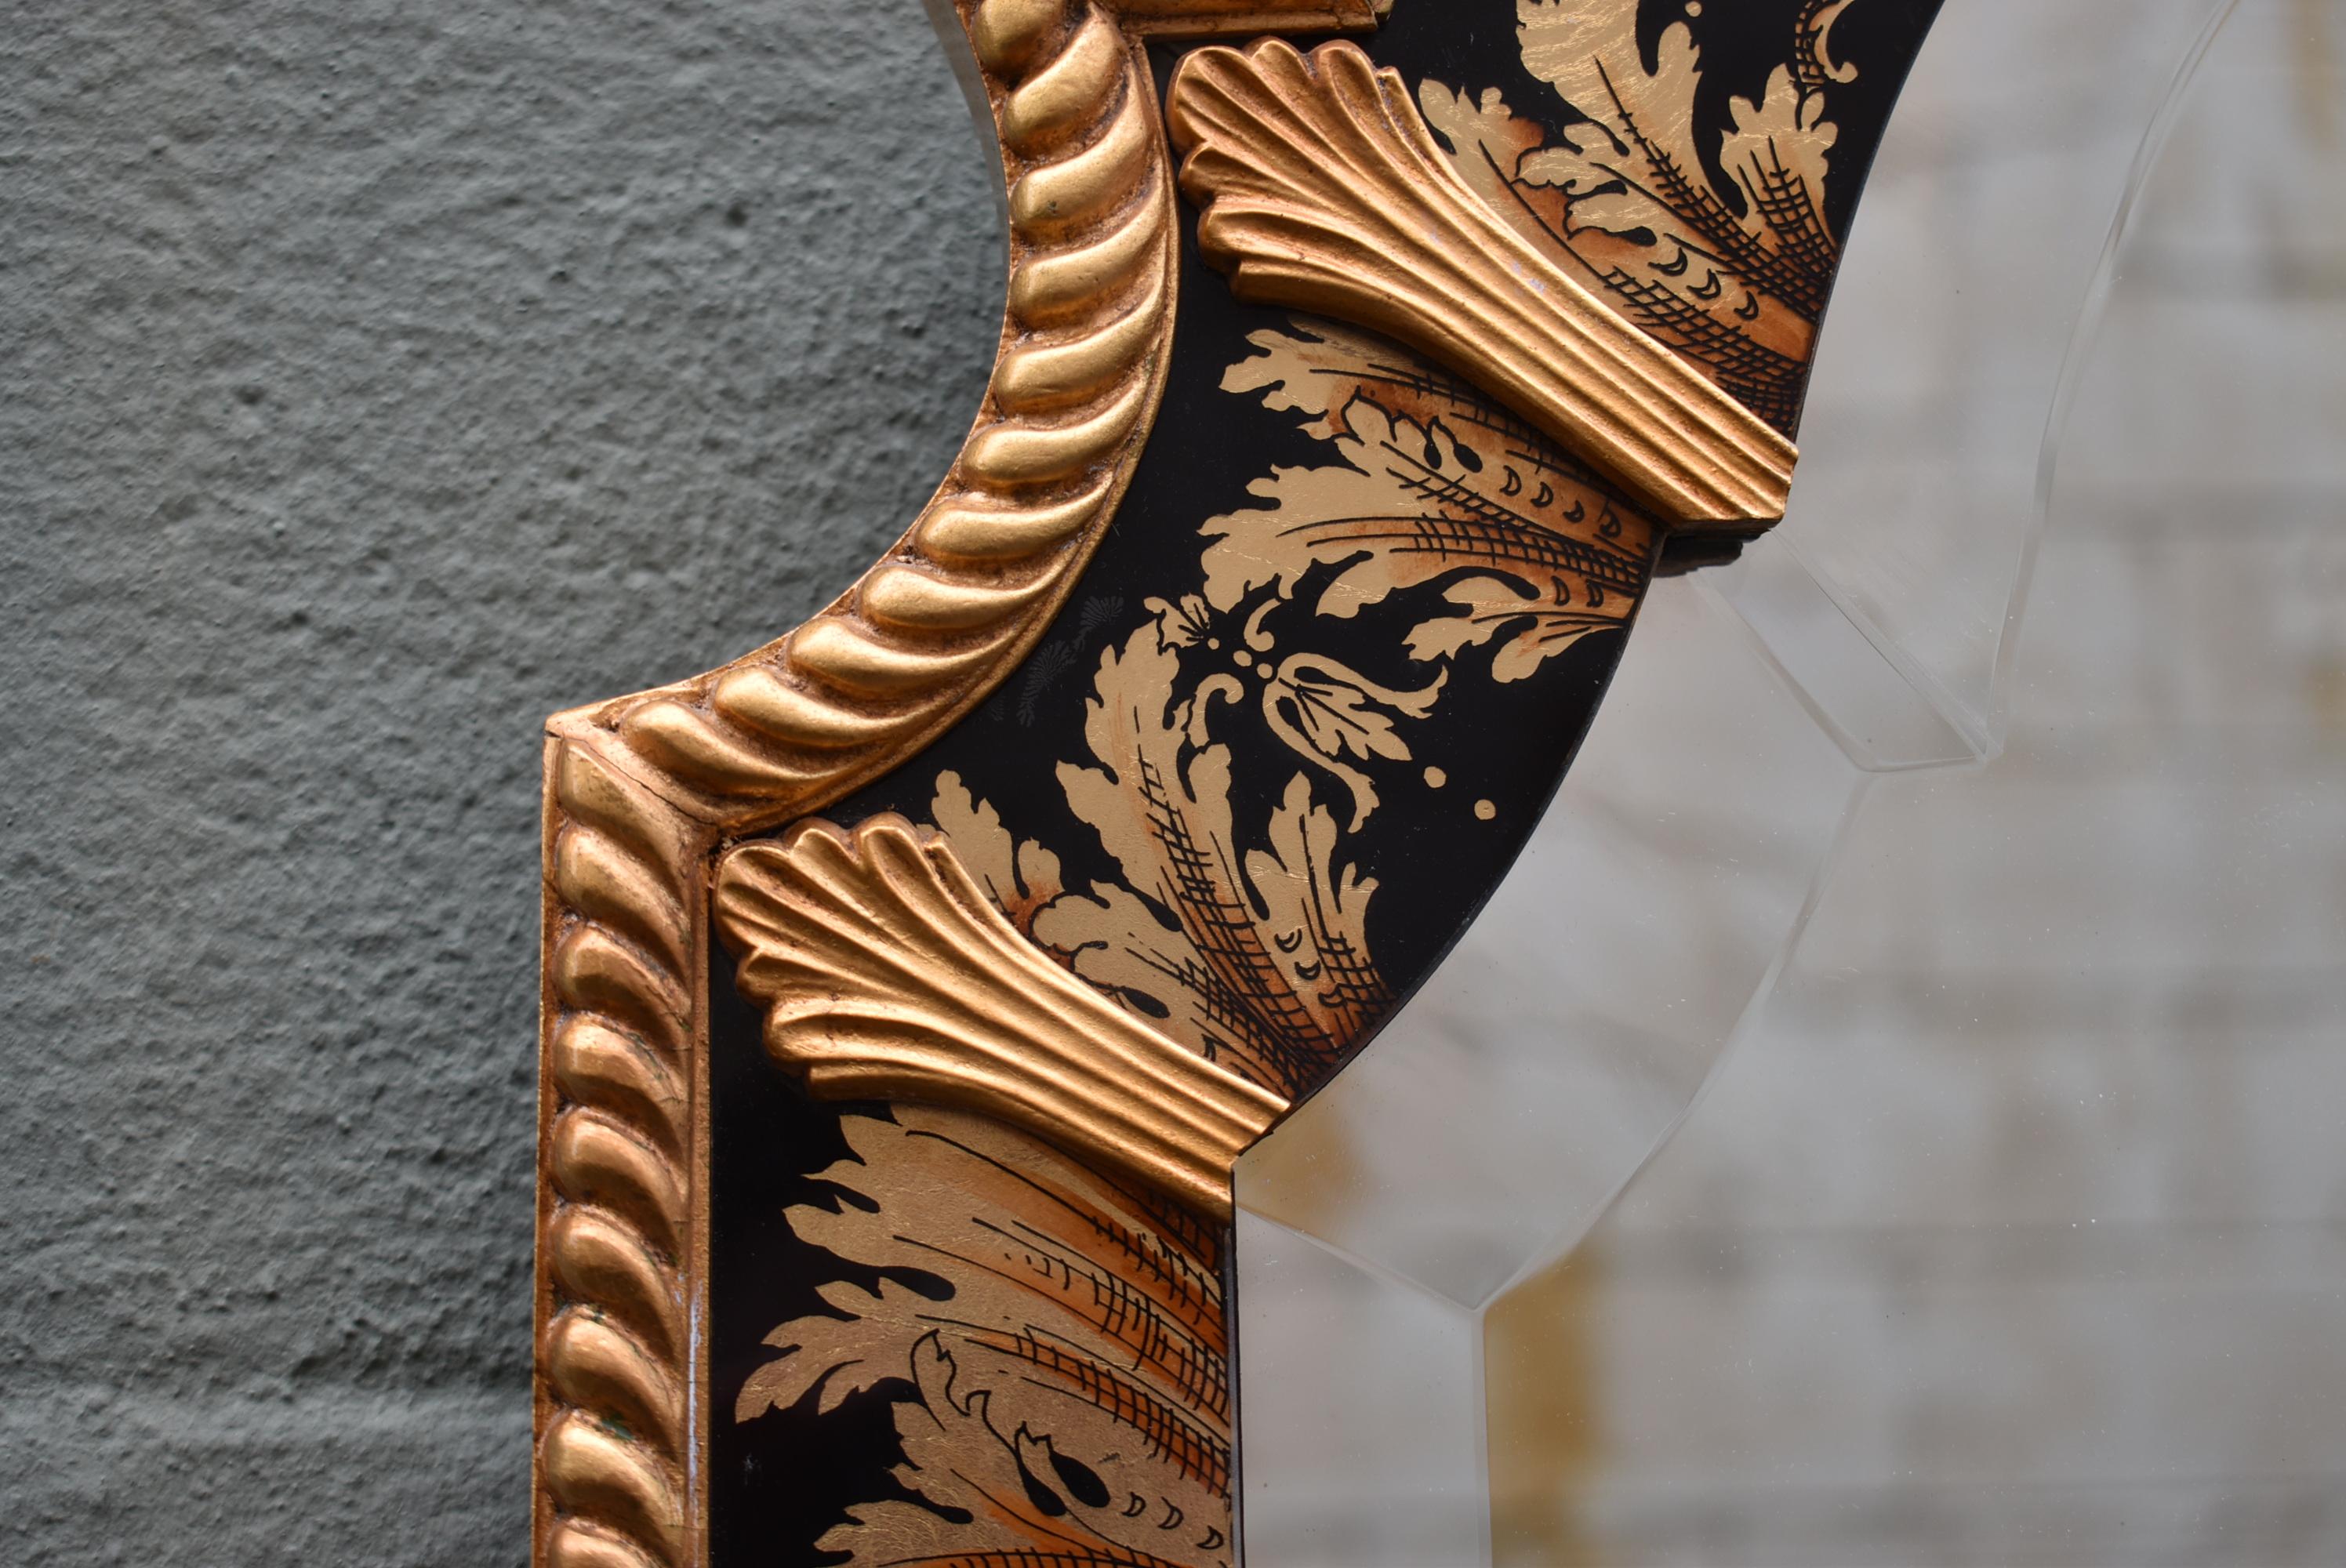 Ce miroir mural biseauté de style chinoiserie fait partie de la collection Stately Homes de Baker Furniture. Le miroir présente des panneaux peints à l'envers et un cadre doré. 